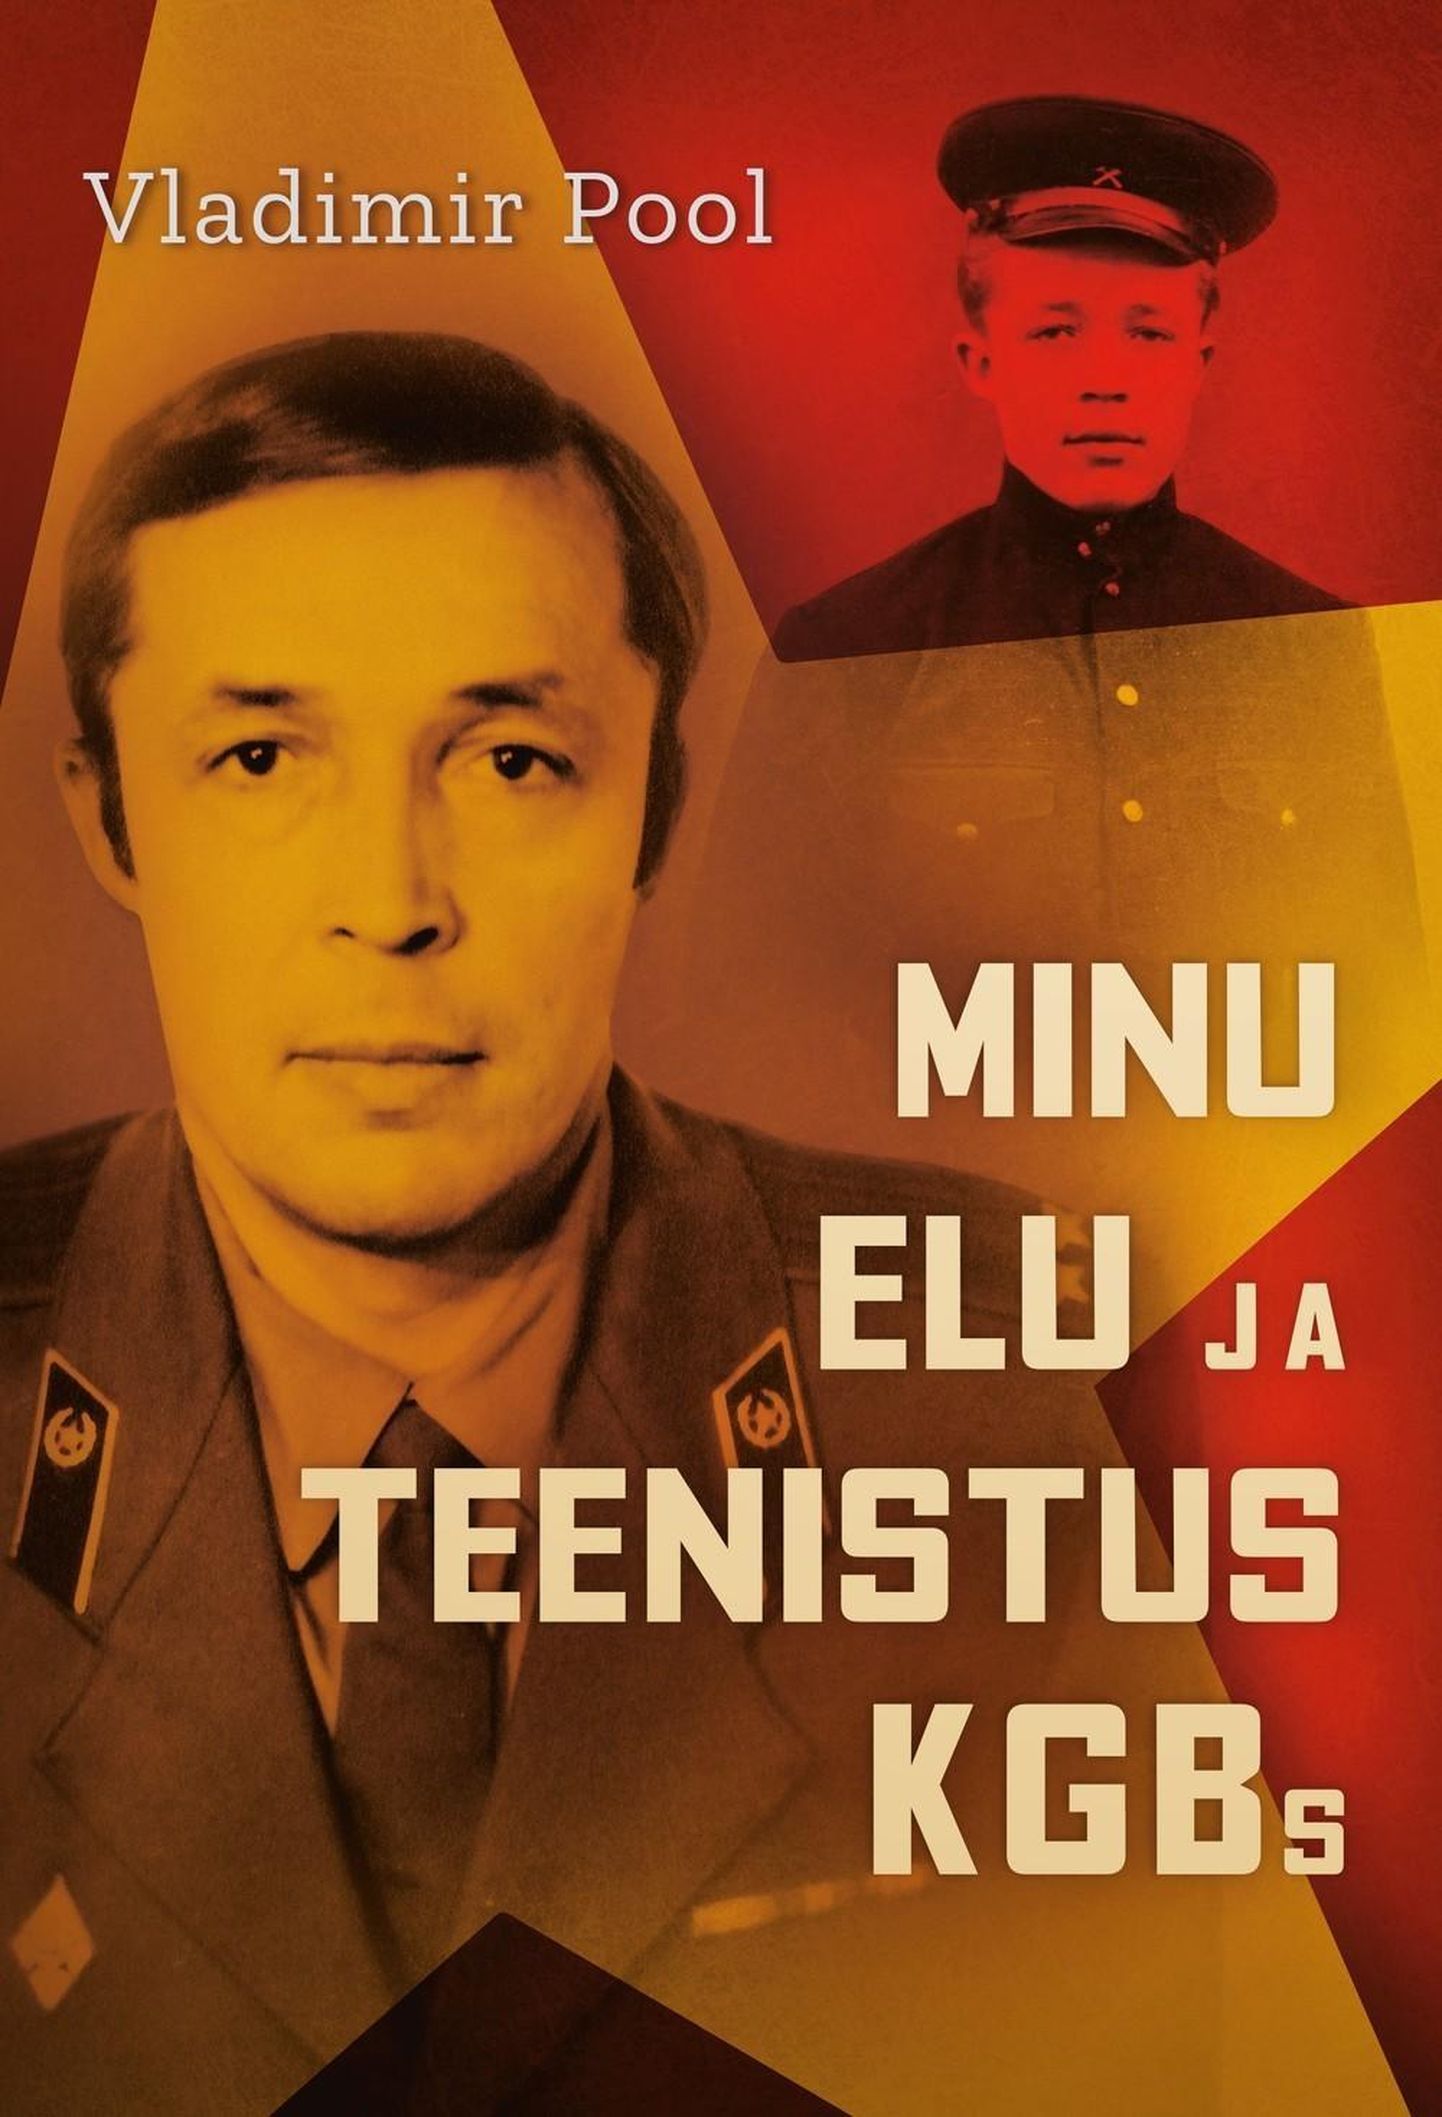 Vladimir Pool, „Minu elu ja teenistus KGBs“.